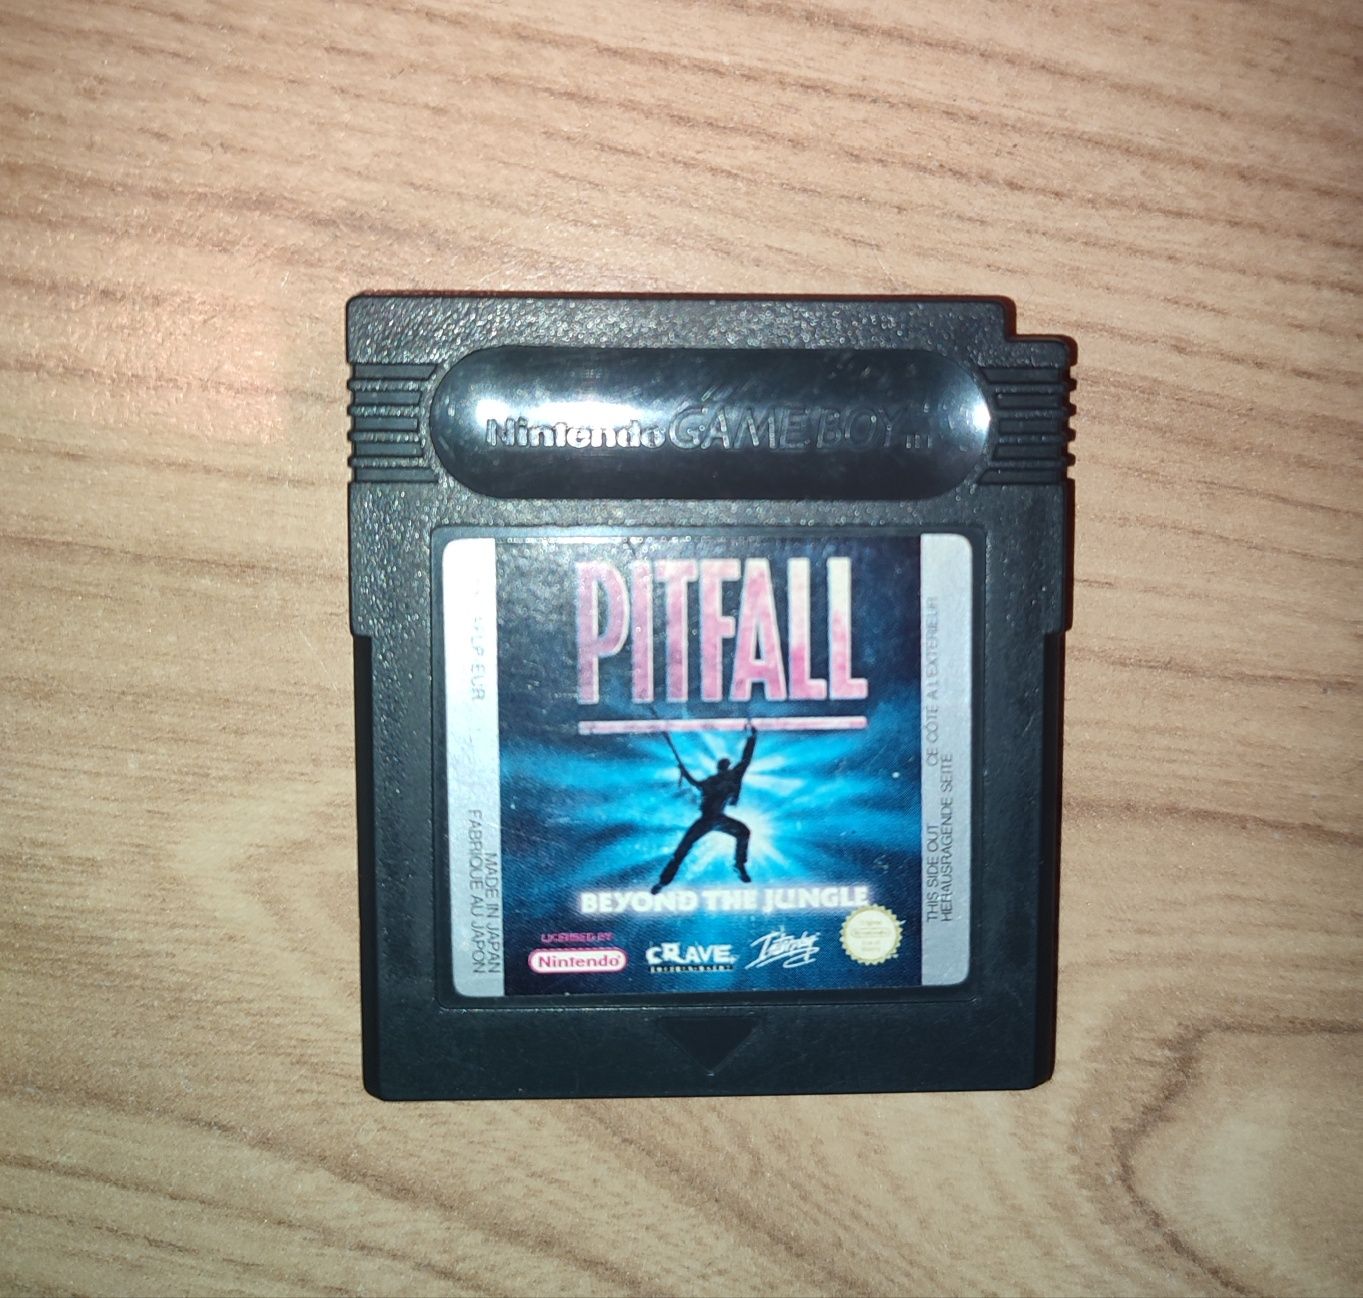 Nintendo gra Game Boy Color - Pitfall
Stan bardzo dobry, bez uszkodzeń